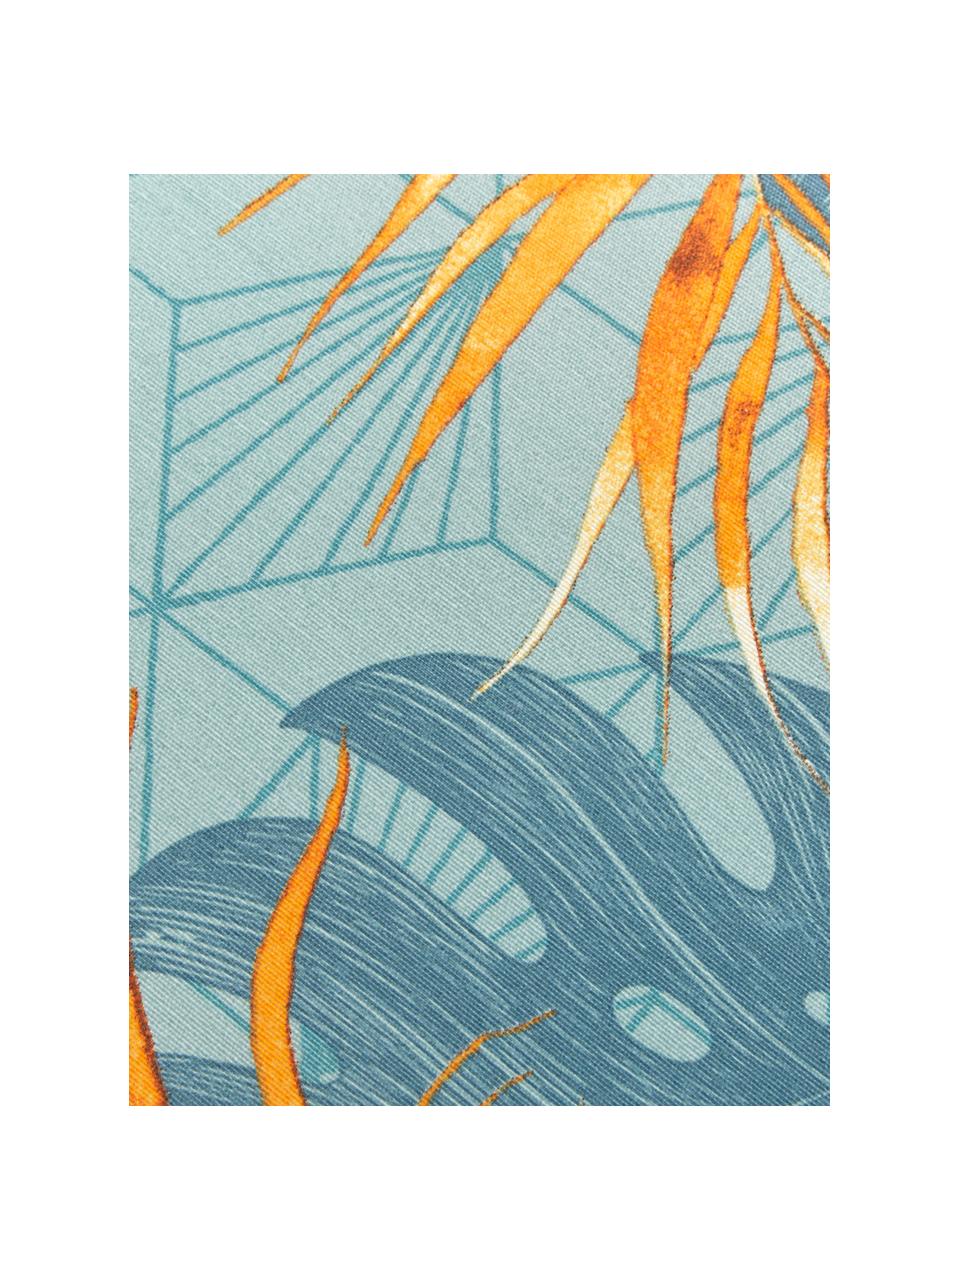 Stoelkussen Dotan met tropische print, Lichtblauw, blauw, oranje, 45 x 45 cm